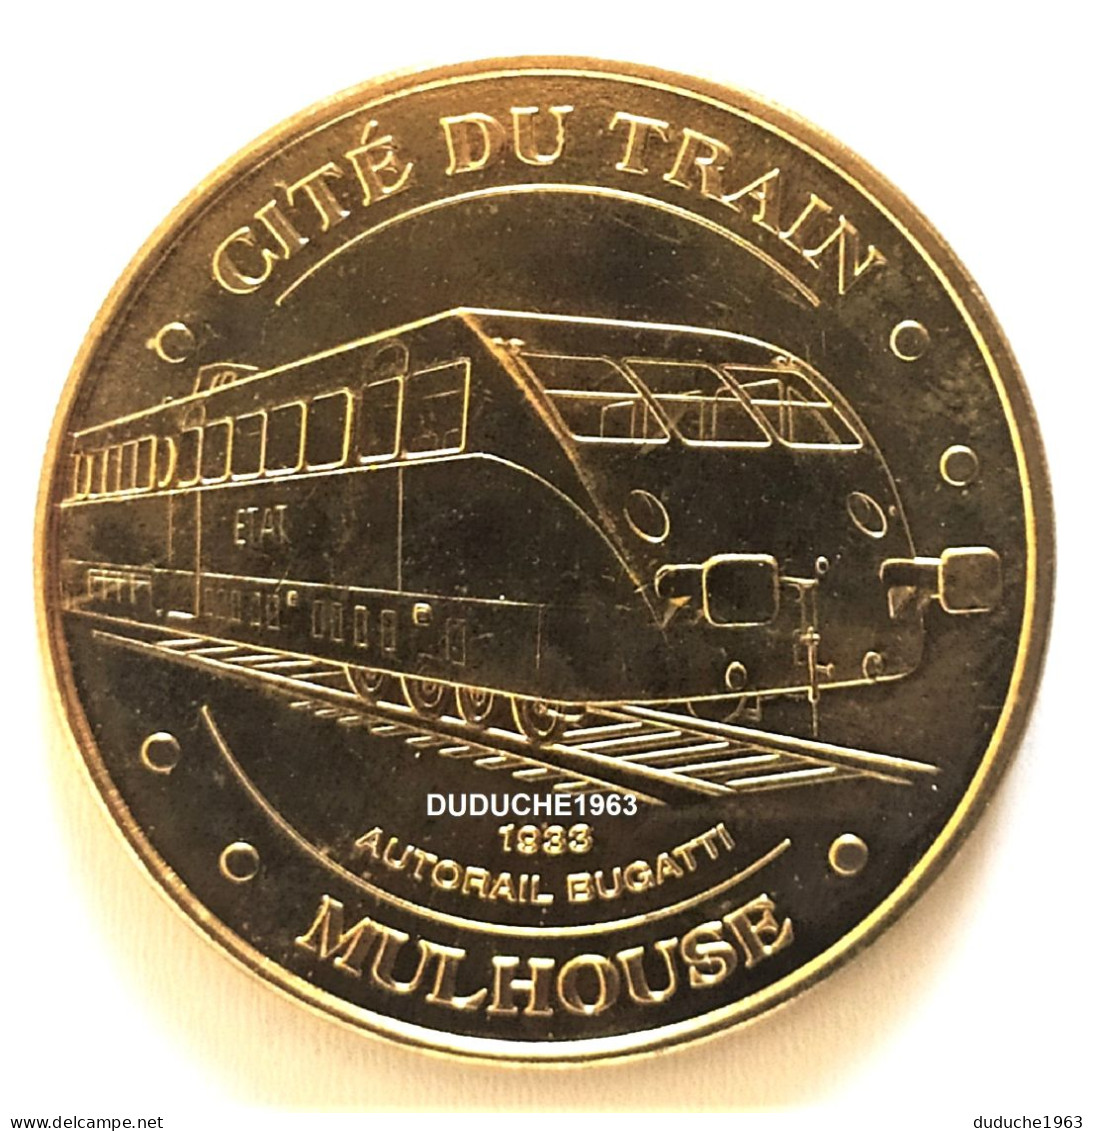 Monnaie De Paris 68. Mulhouse. Cité Du Train - Autorail Bugatti 2013 - 2013